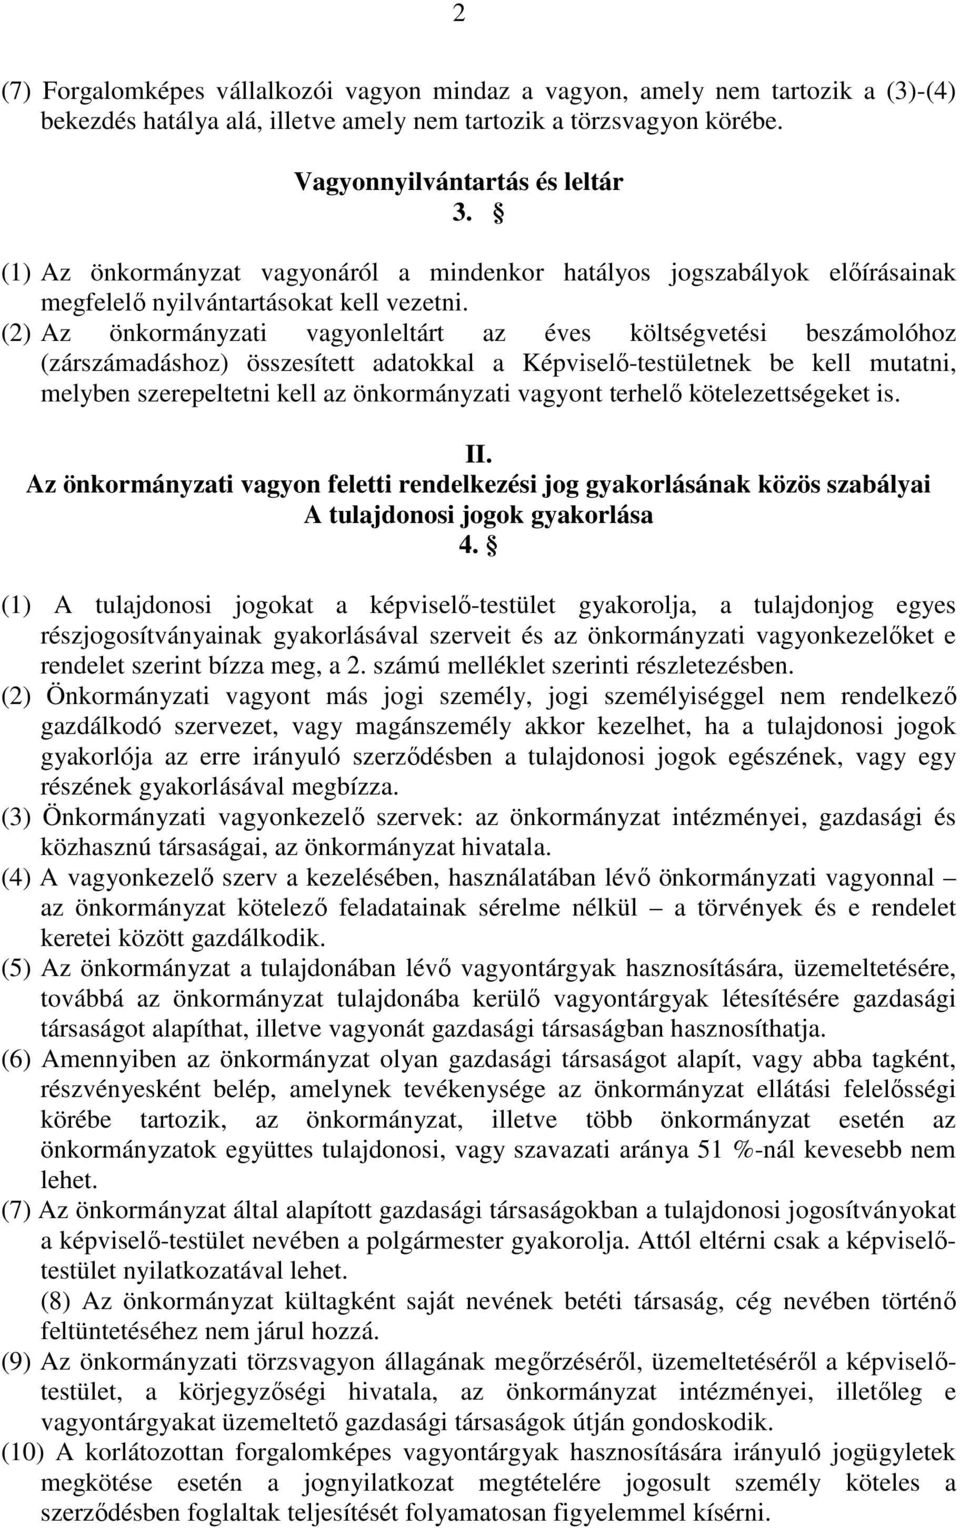 (2) Az önkormányzati vagyonleltárt az éves költségvetési beszámolóhoz (zárszámadáshoz) összesített adatokkal a Képviselı-testületnek be kell mutatni, melyben szerepeltetni kell az önkormányzati